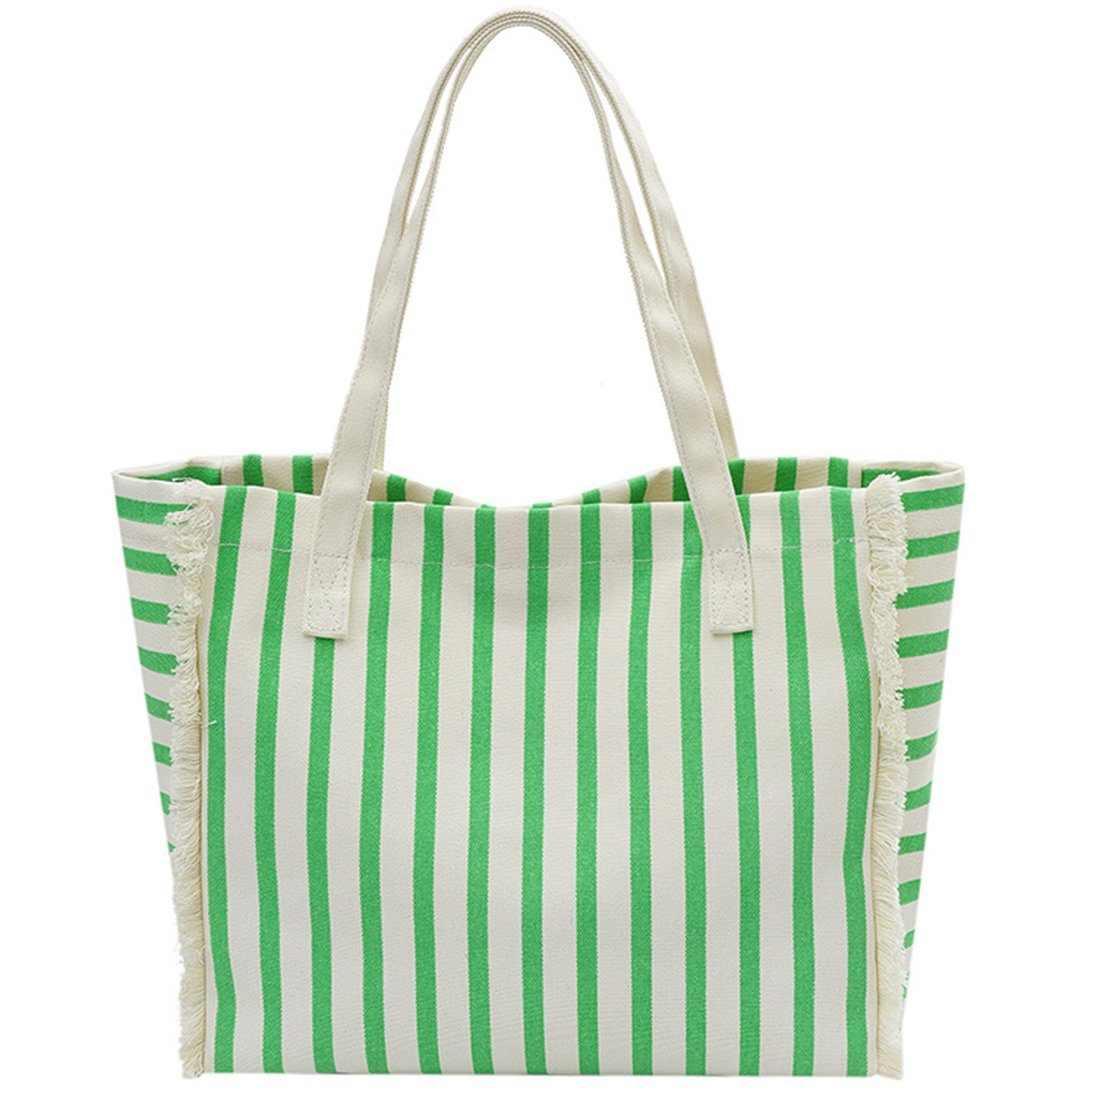 Groß Innentasche Umhängetasche für Damen,Lässige Tasche, green Haiaveng Segeltuch Tote mit Handtasche Schultertasche Umhängetasche Shopper